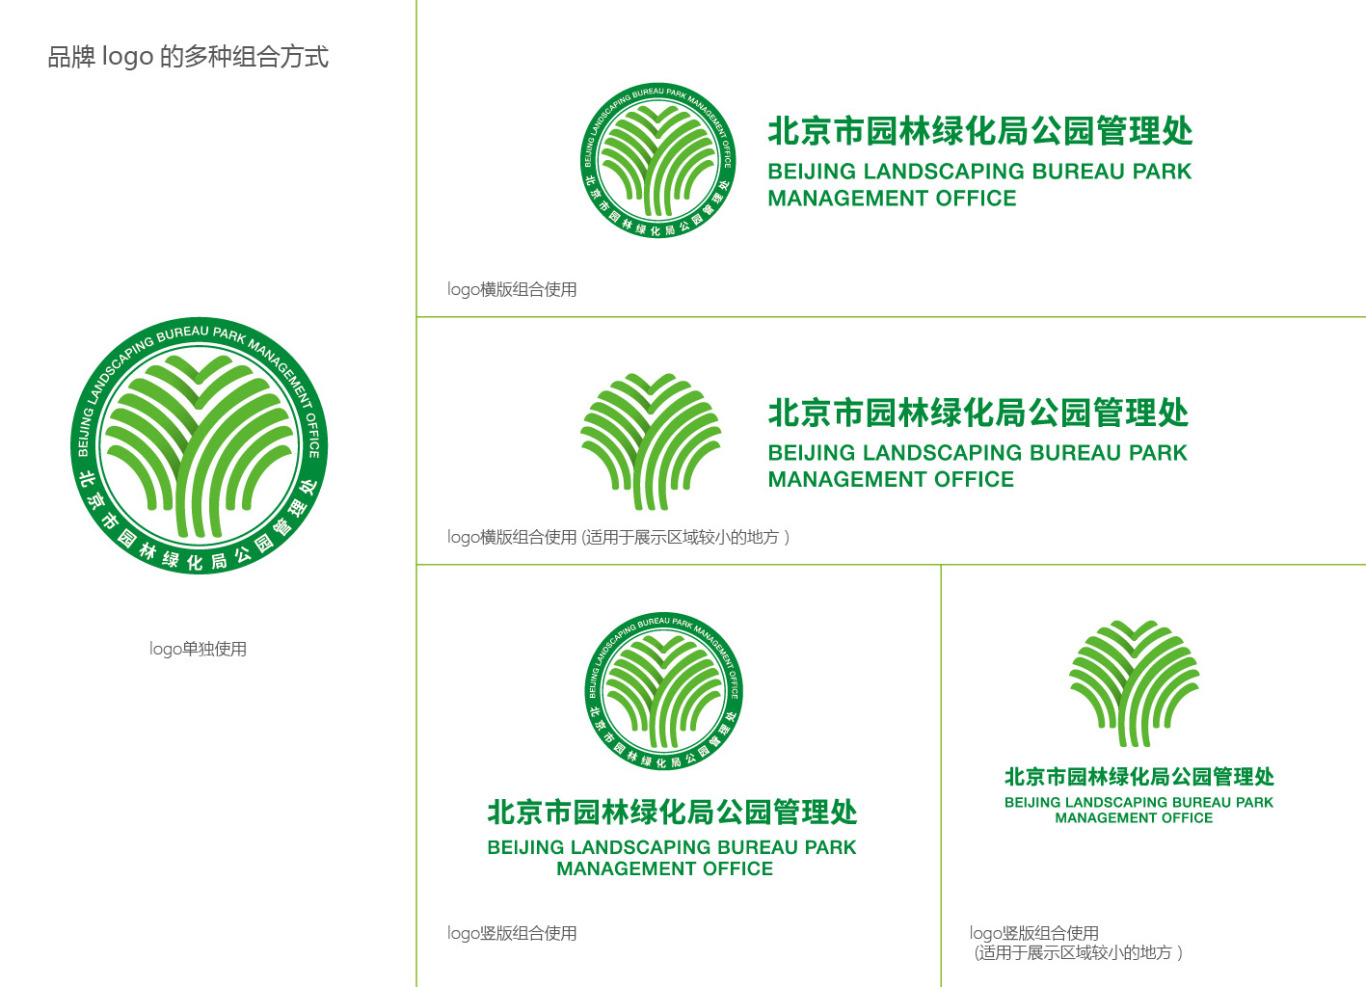 北京市园林绿化局管理处logo设计图8